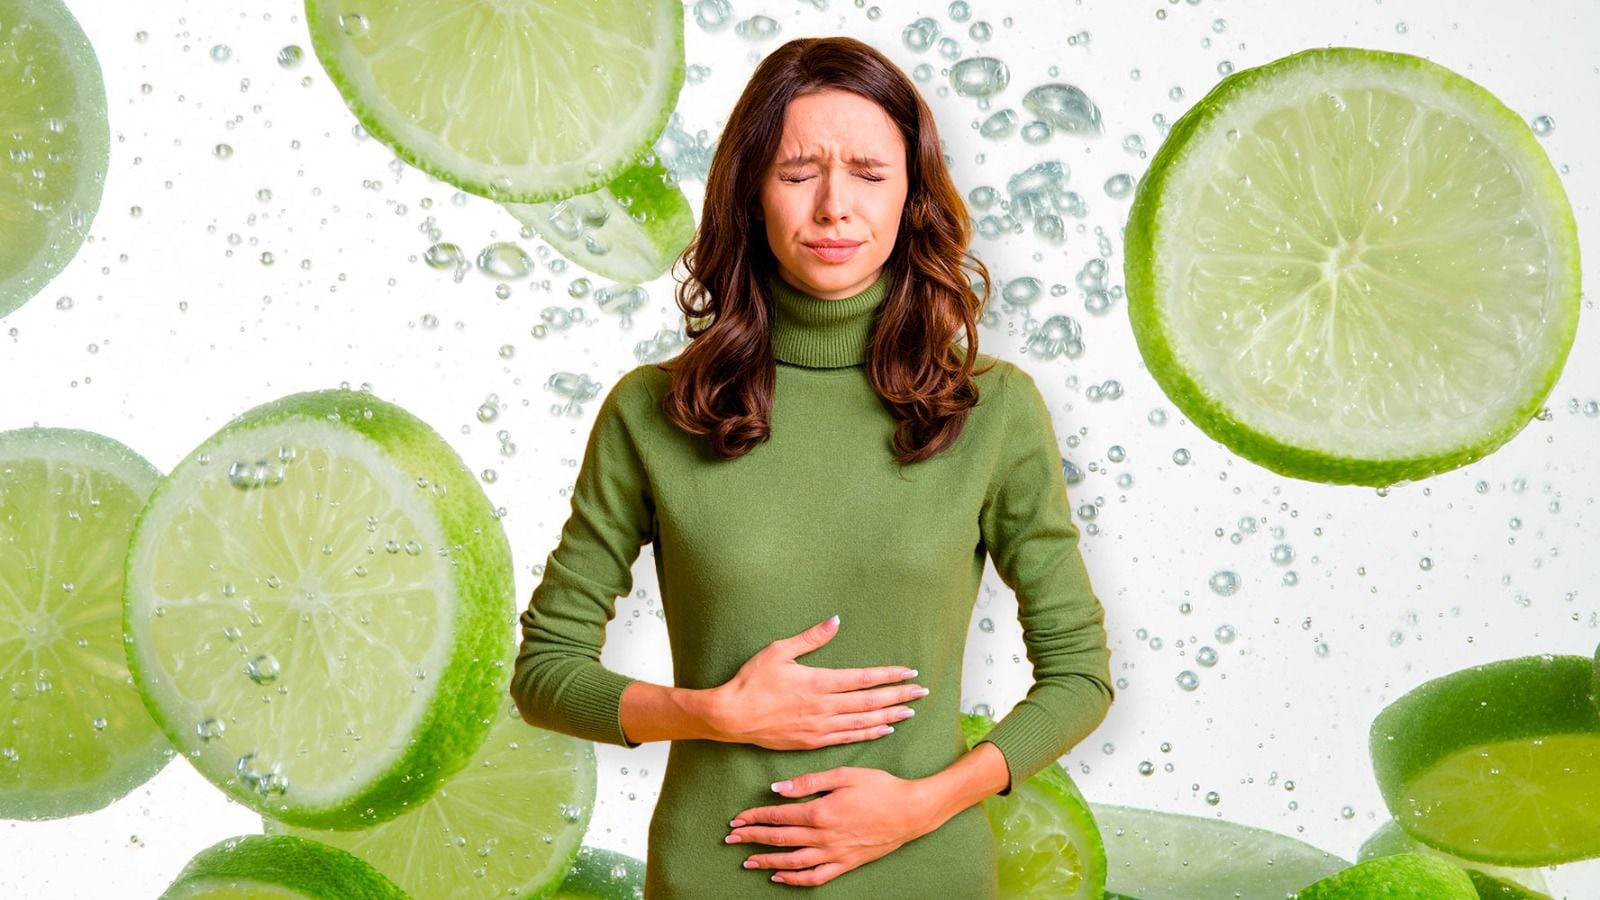 En exceso, el limón puede presentar algunas complicaciones para el cuerpo. (Fotos: Shutterstock).